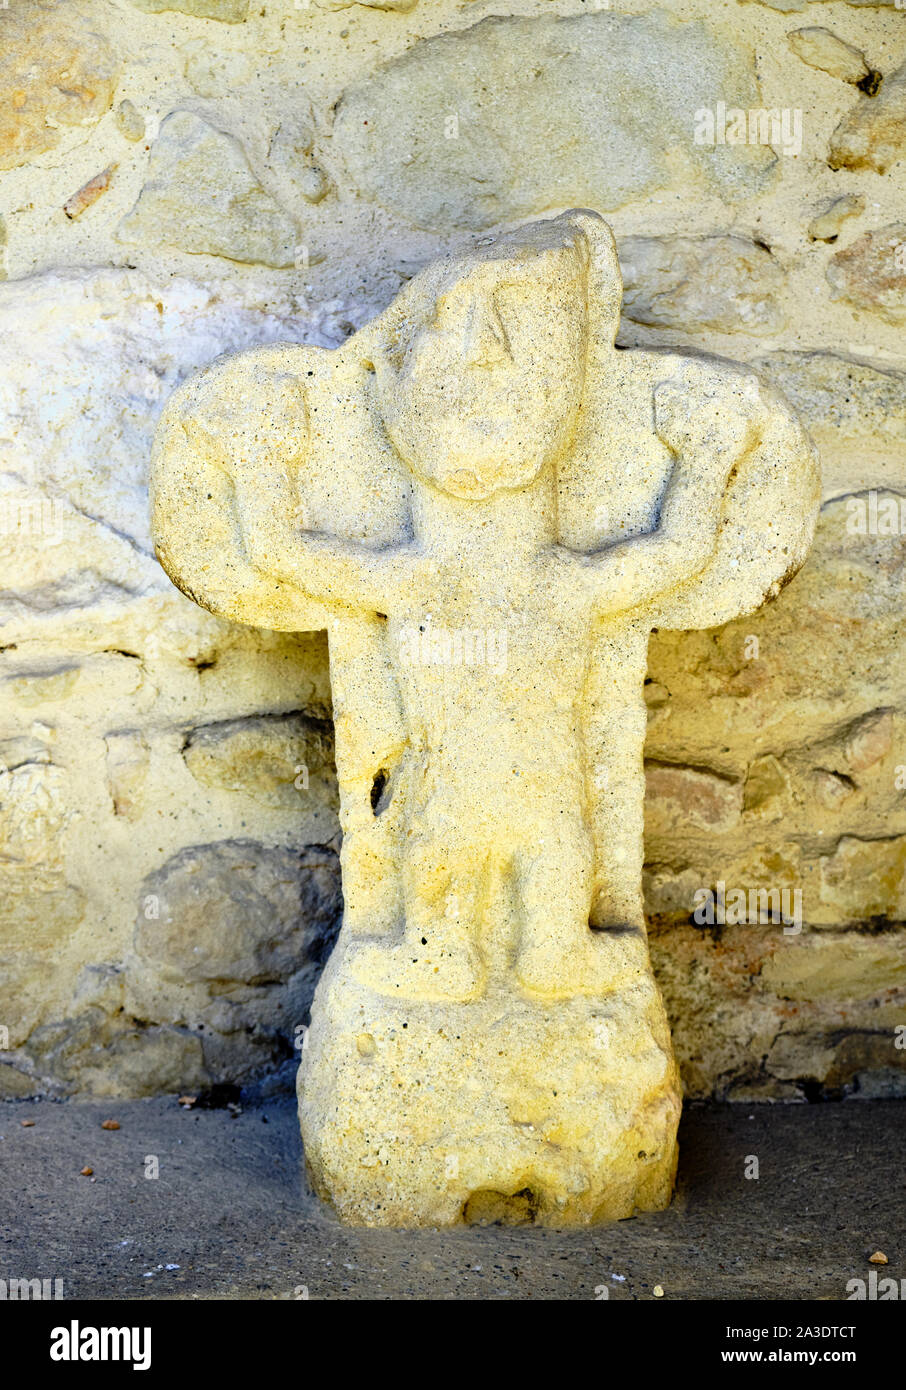 L'orant de les casses, une stèle funéraire antique (tombstone) dans le sud de la France petit village Banque D'Images